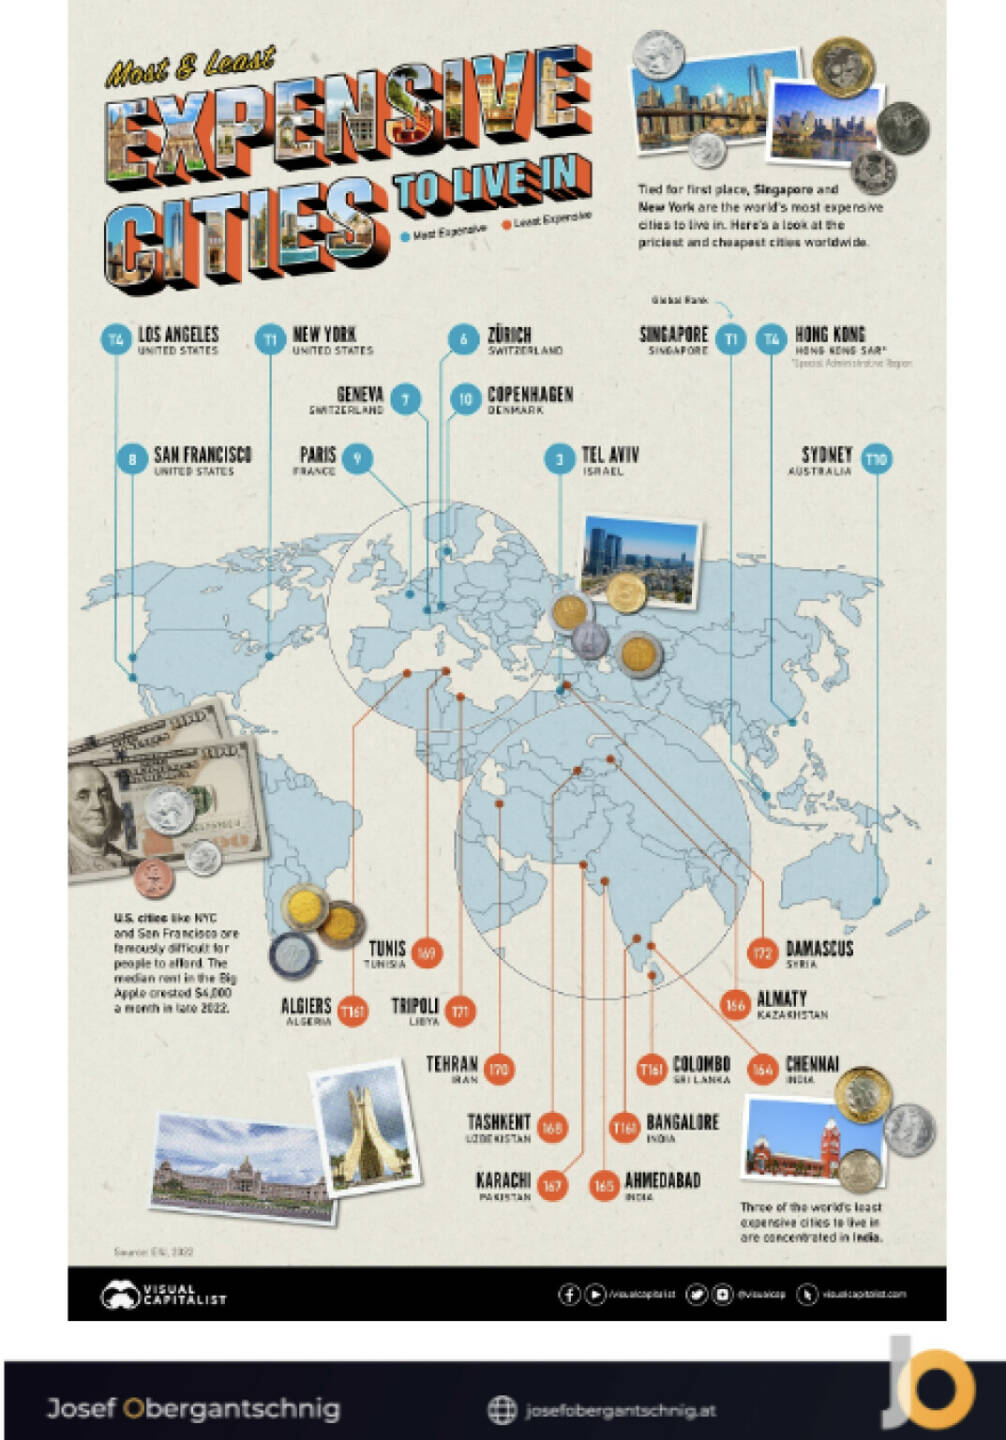 ABC Audio Business Chart #33: Billigste und teuerste Städte der Welt (Josef Obergantschnig)